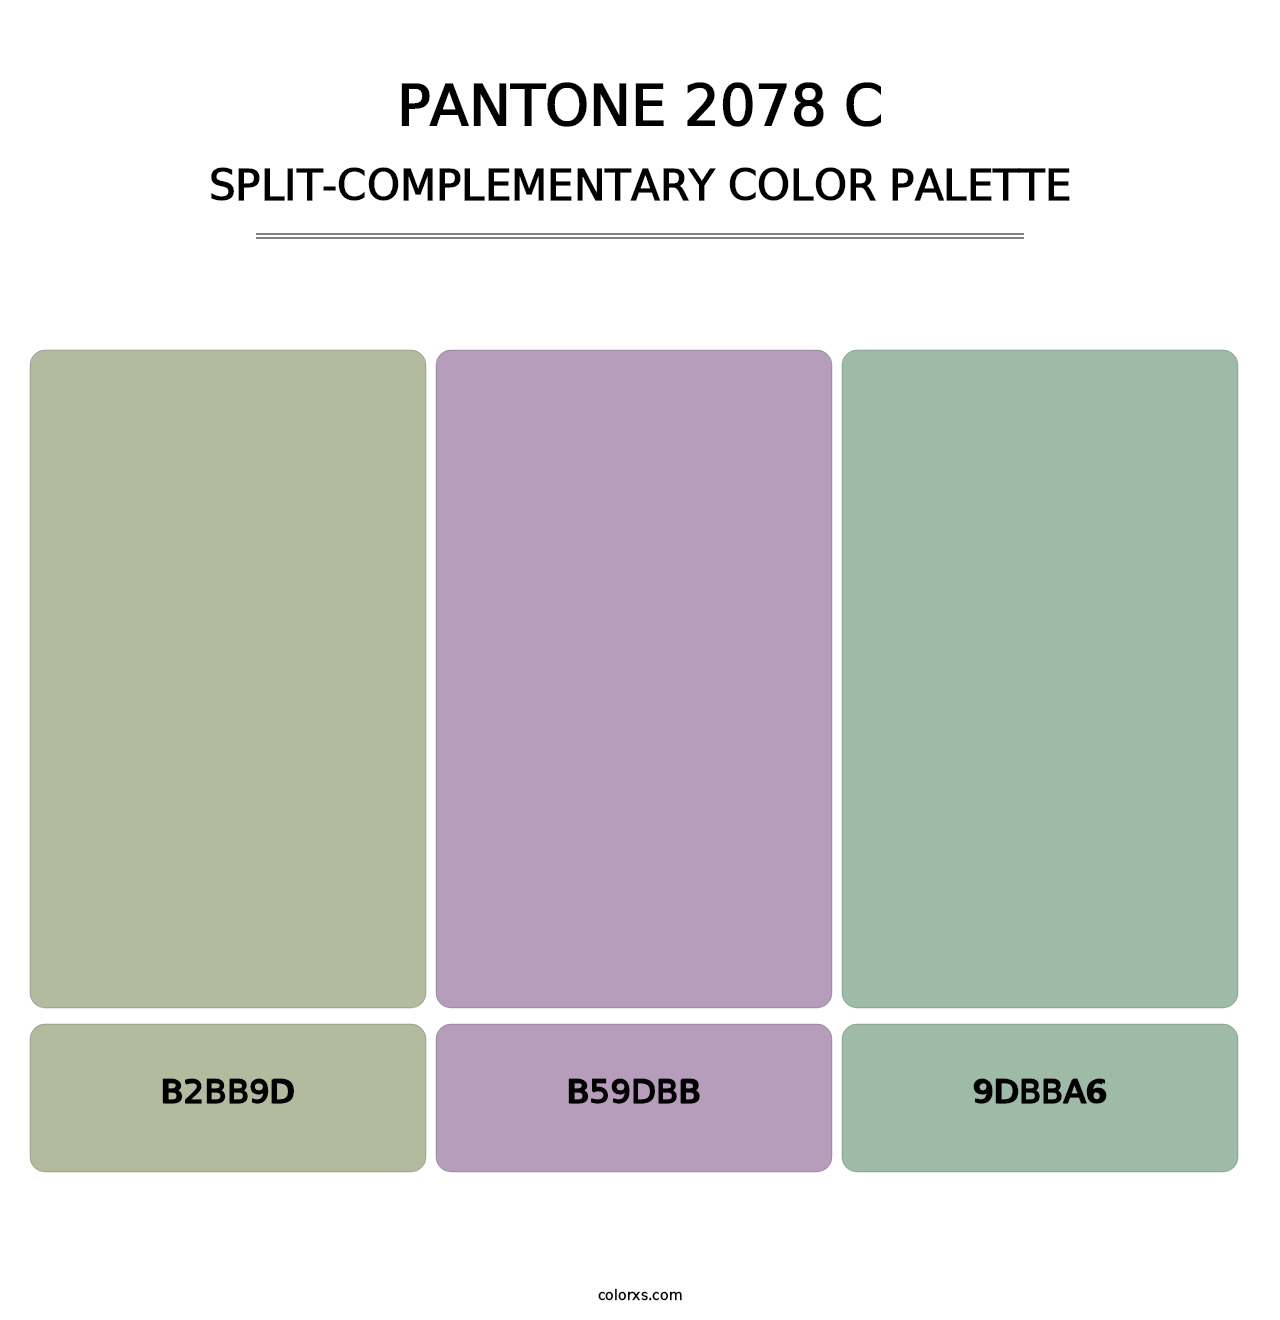 PANTONE 2078 C - Split-Complementary Color Palette